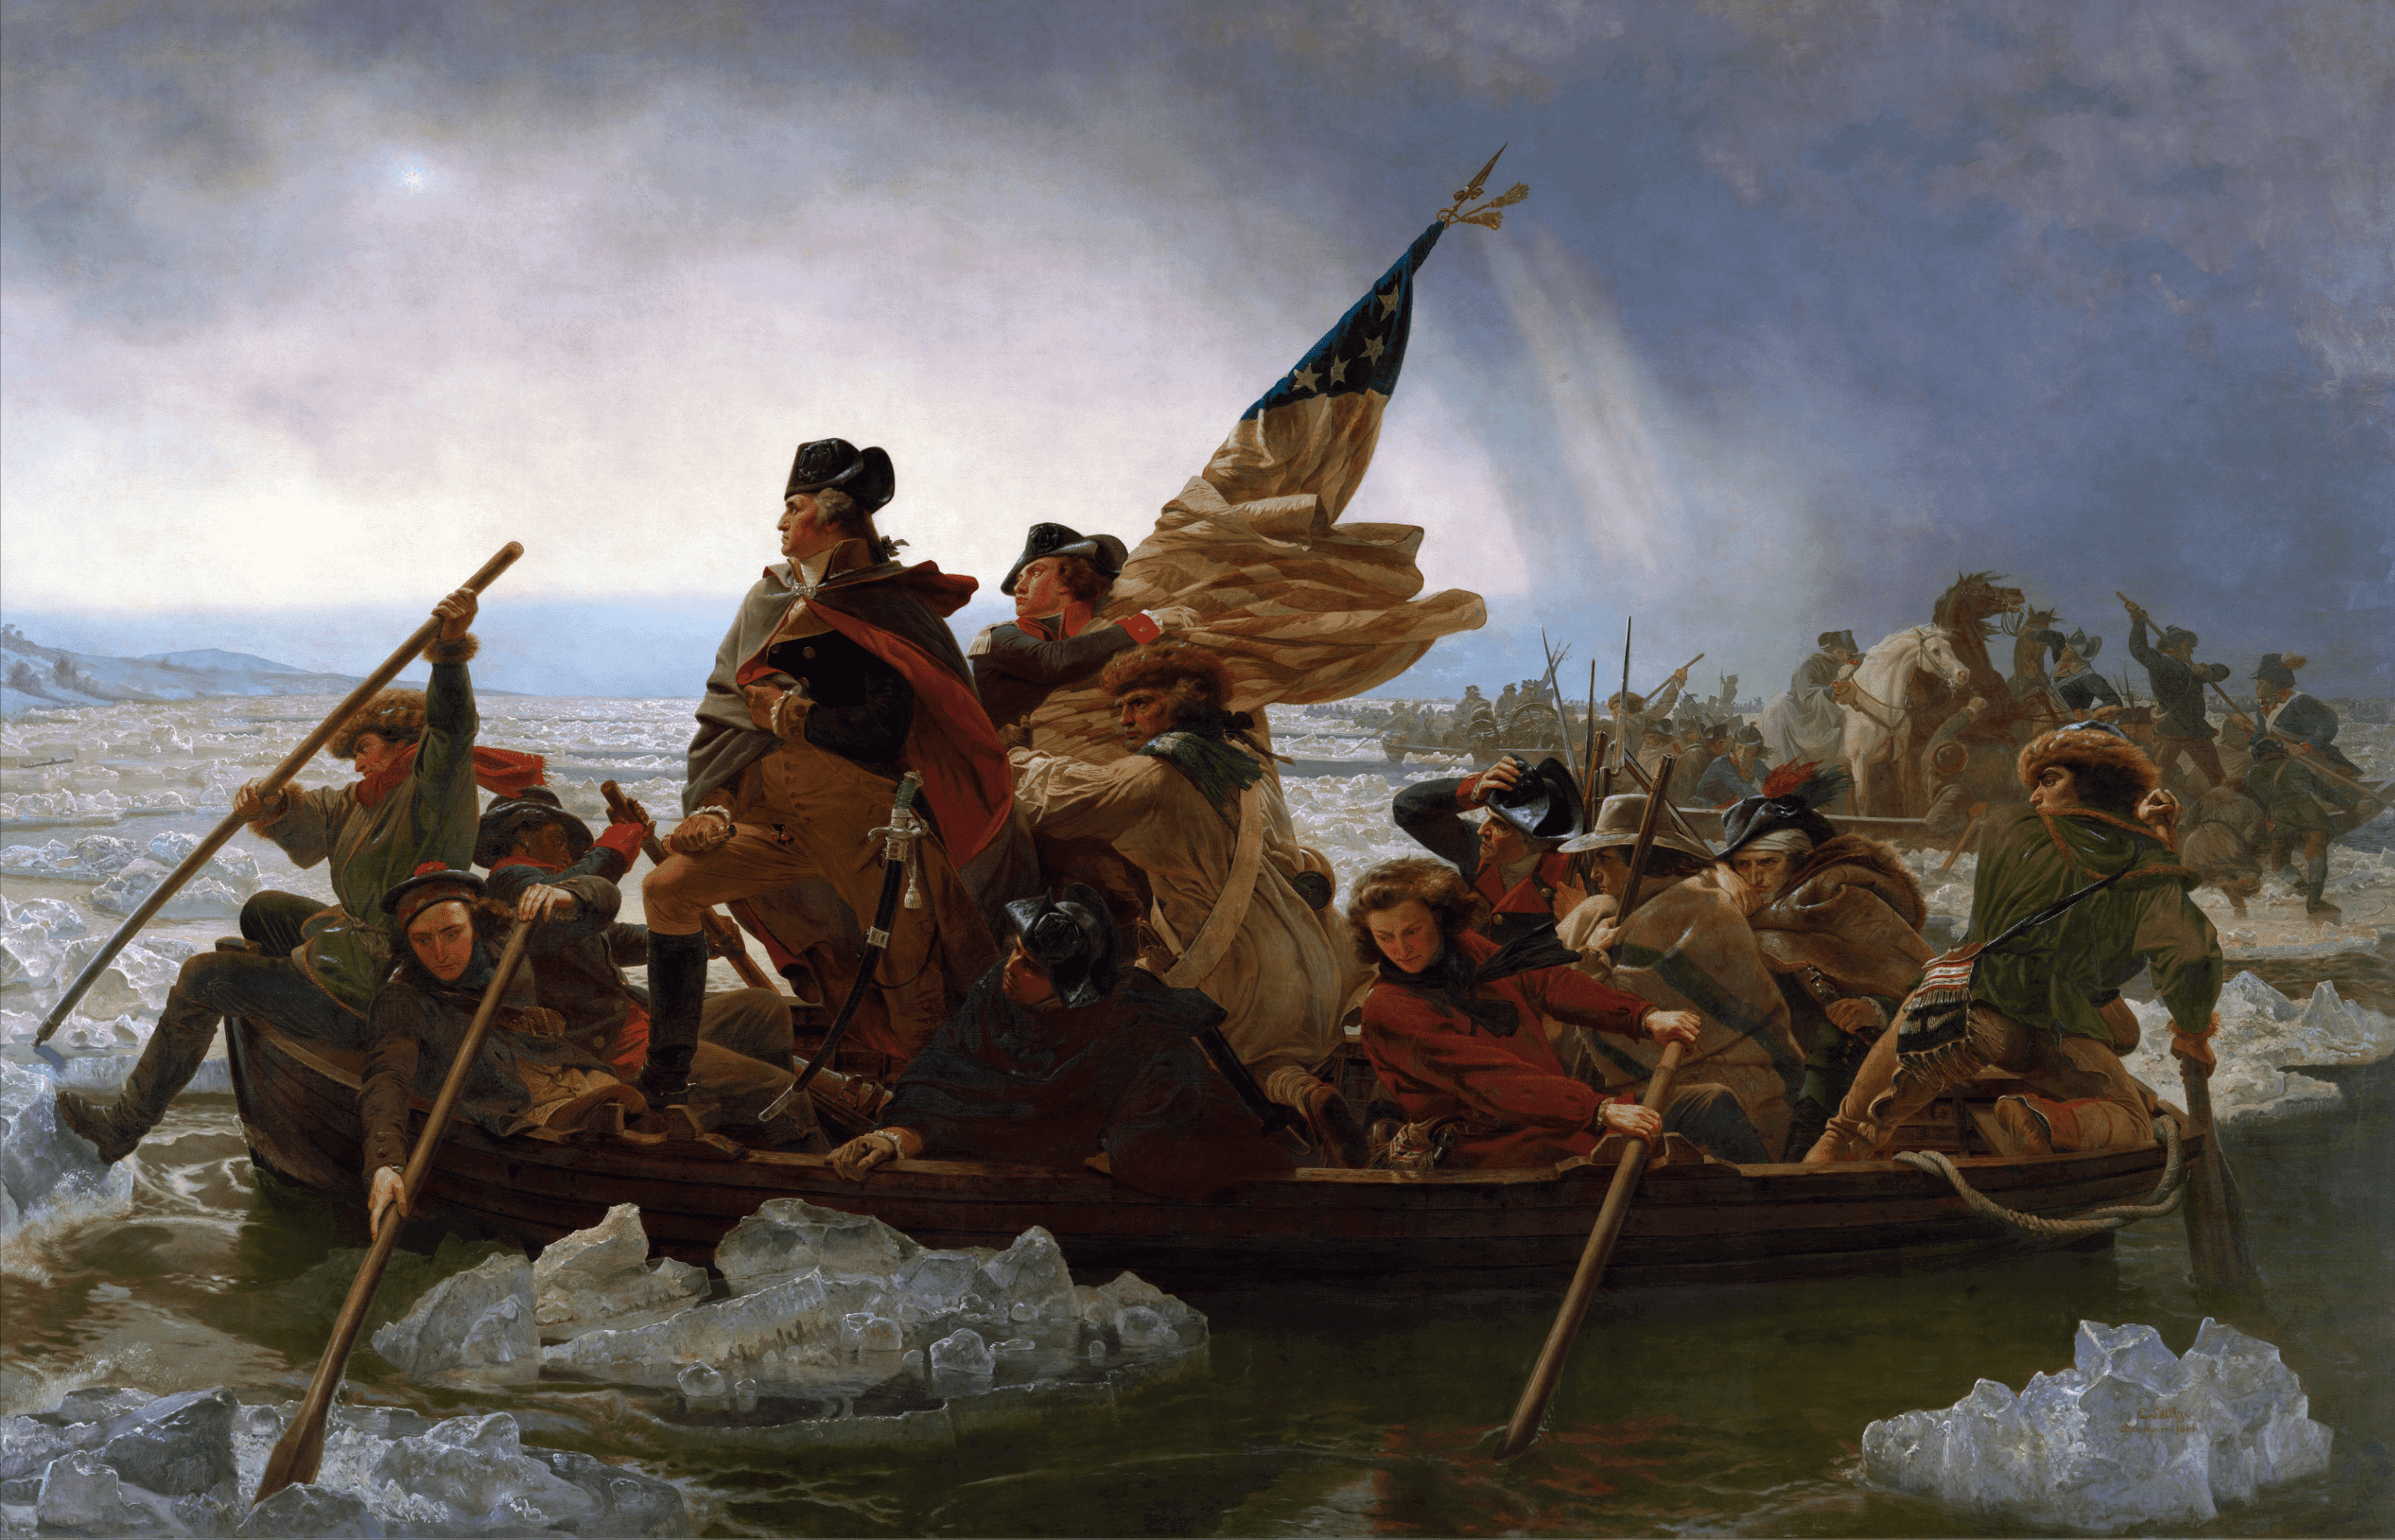 『デラウェア川を渡るワシントン』。1851年にエマヌエル・ロイツェが描いた。 独立戦争中の1776年12月25日、ワシントンが大陸軍を率いてデラウェア川を渡り、トレントンの戦いでドイツ人傭兵隊を急襲した。メトロポリタン美術館の永久収蔵品。